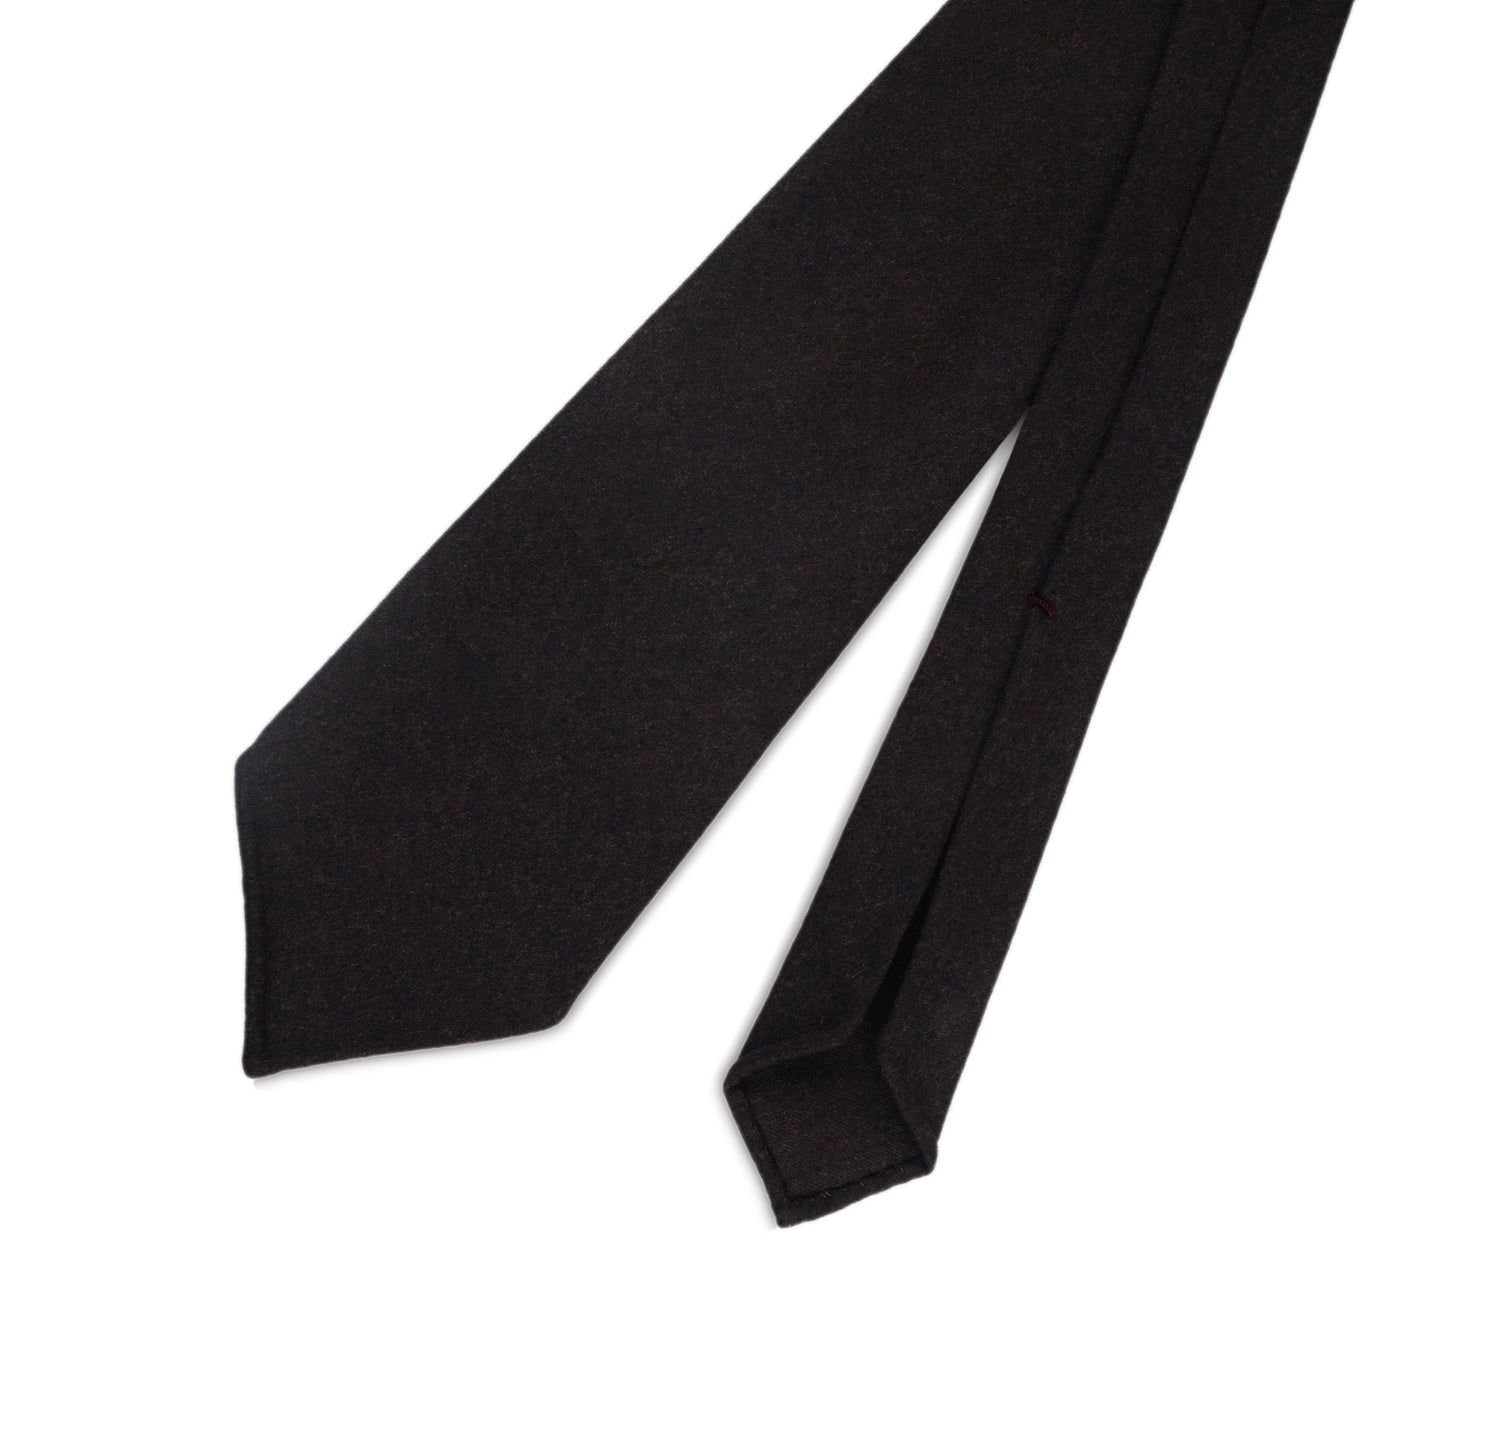 Dark Chocolate Brown Flannel Tie (43063345160)